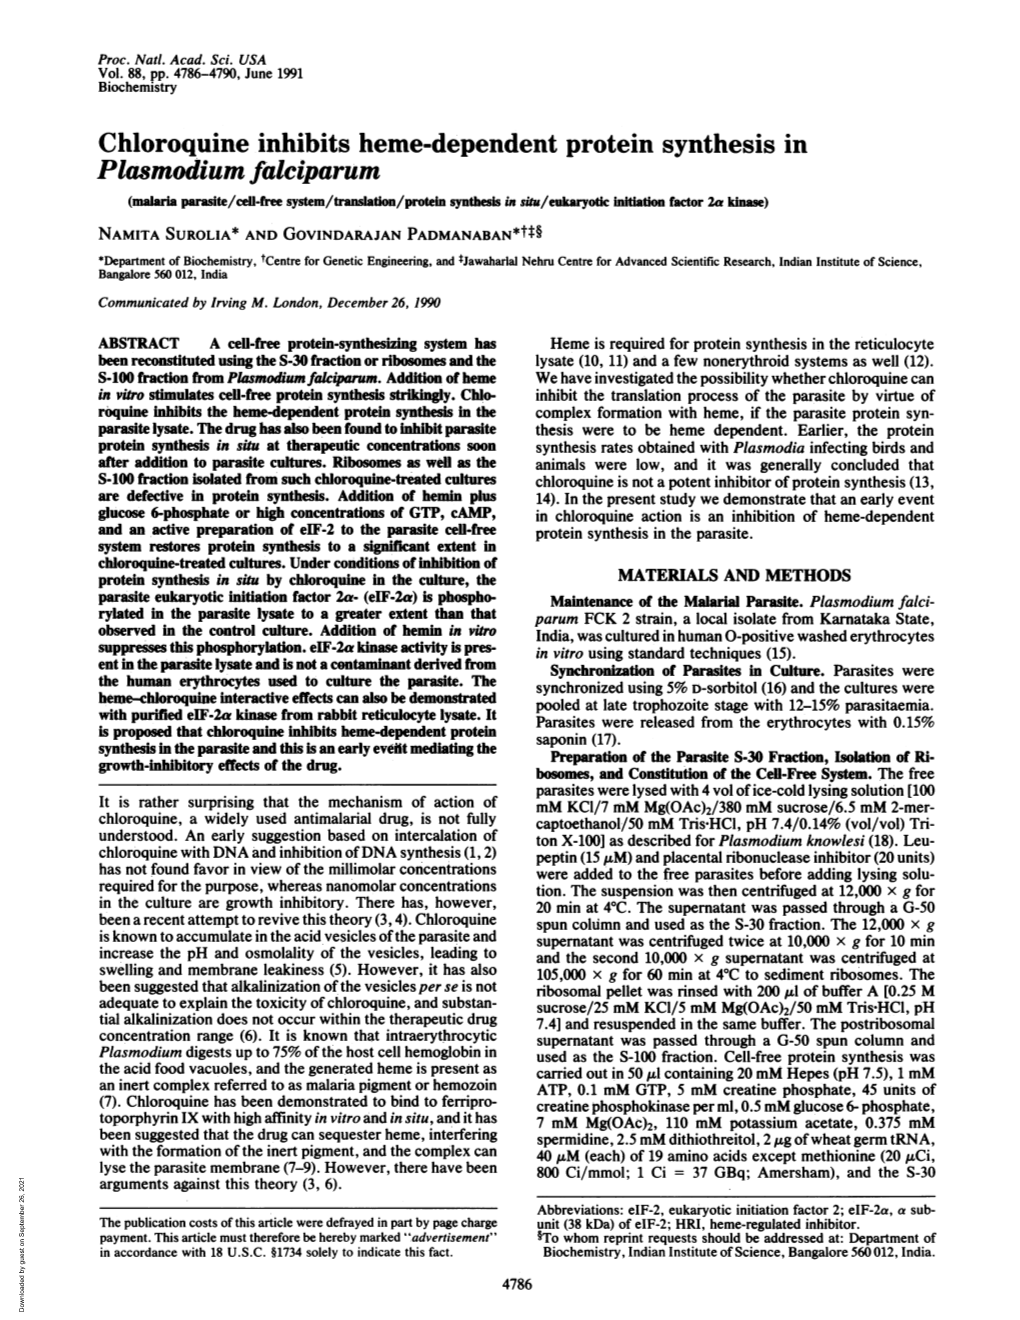 Plasmodium Falciparum